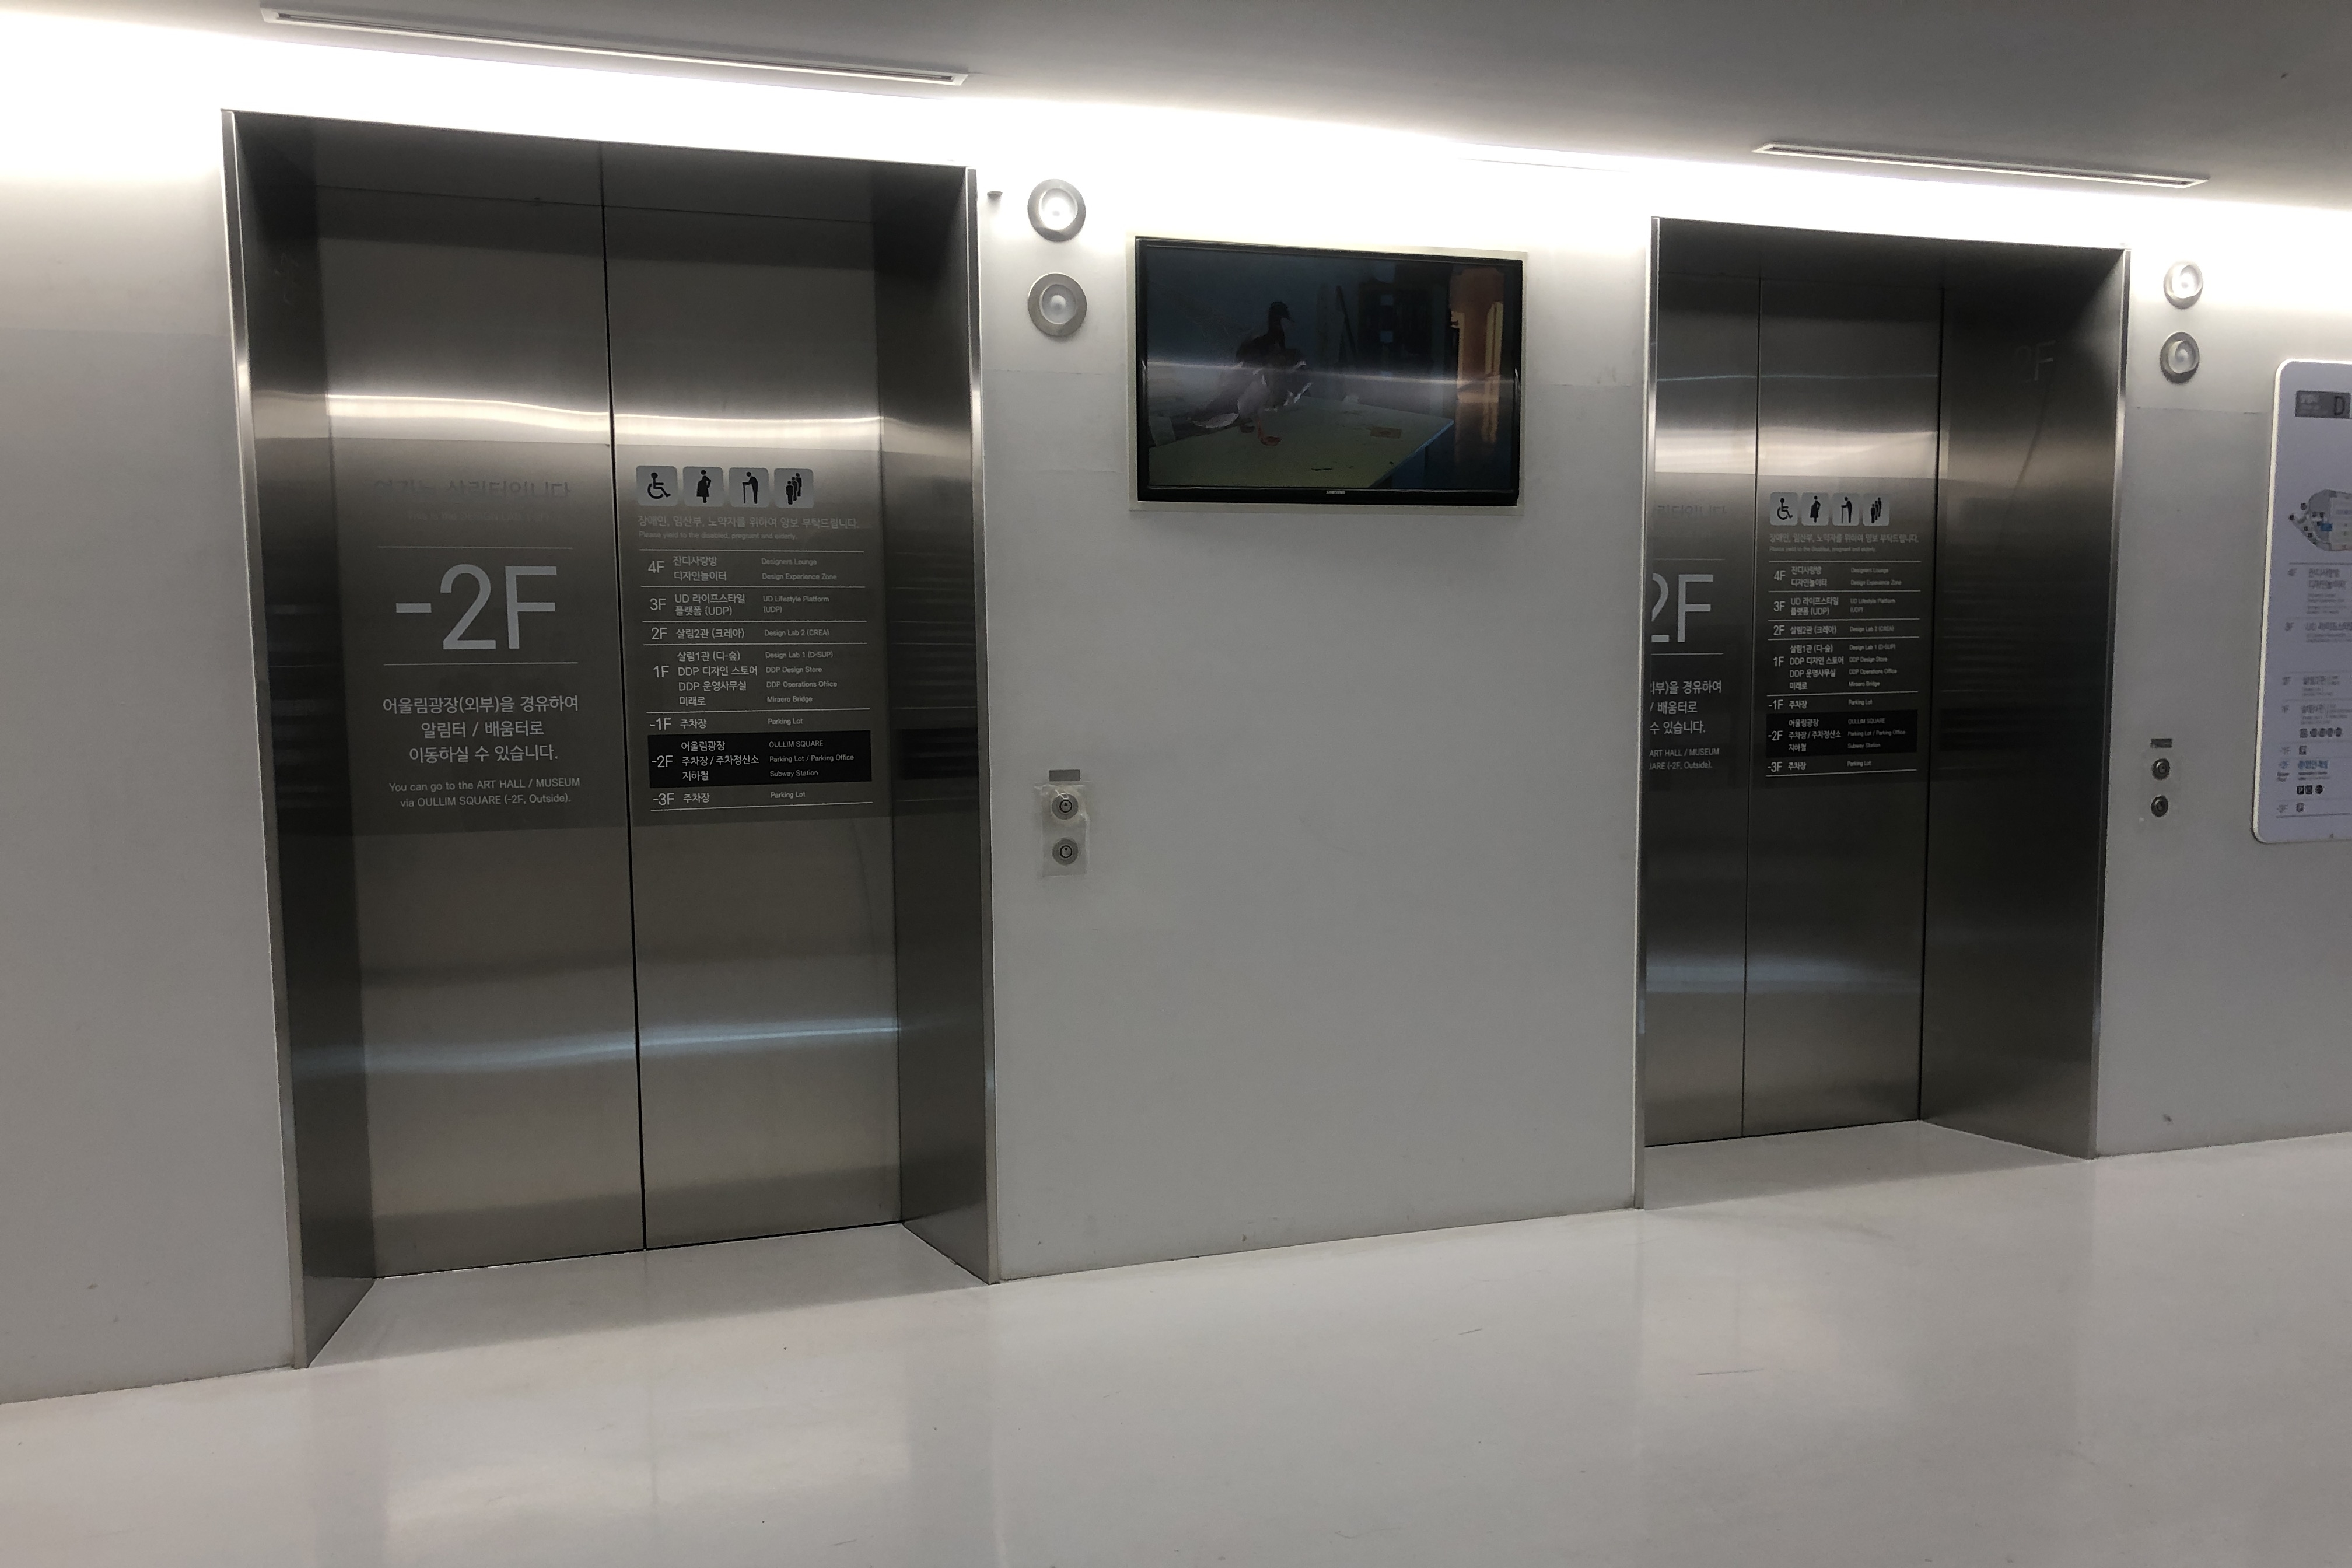 엘리베이터0 : 동대문디자인플라자(DDP) 엘리베이터 출입구 전경